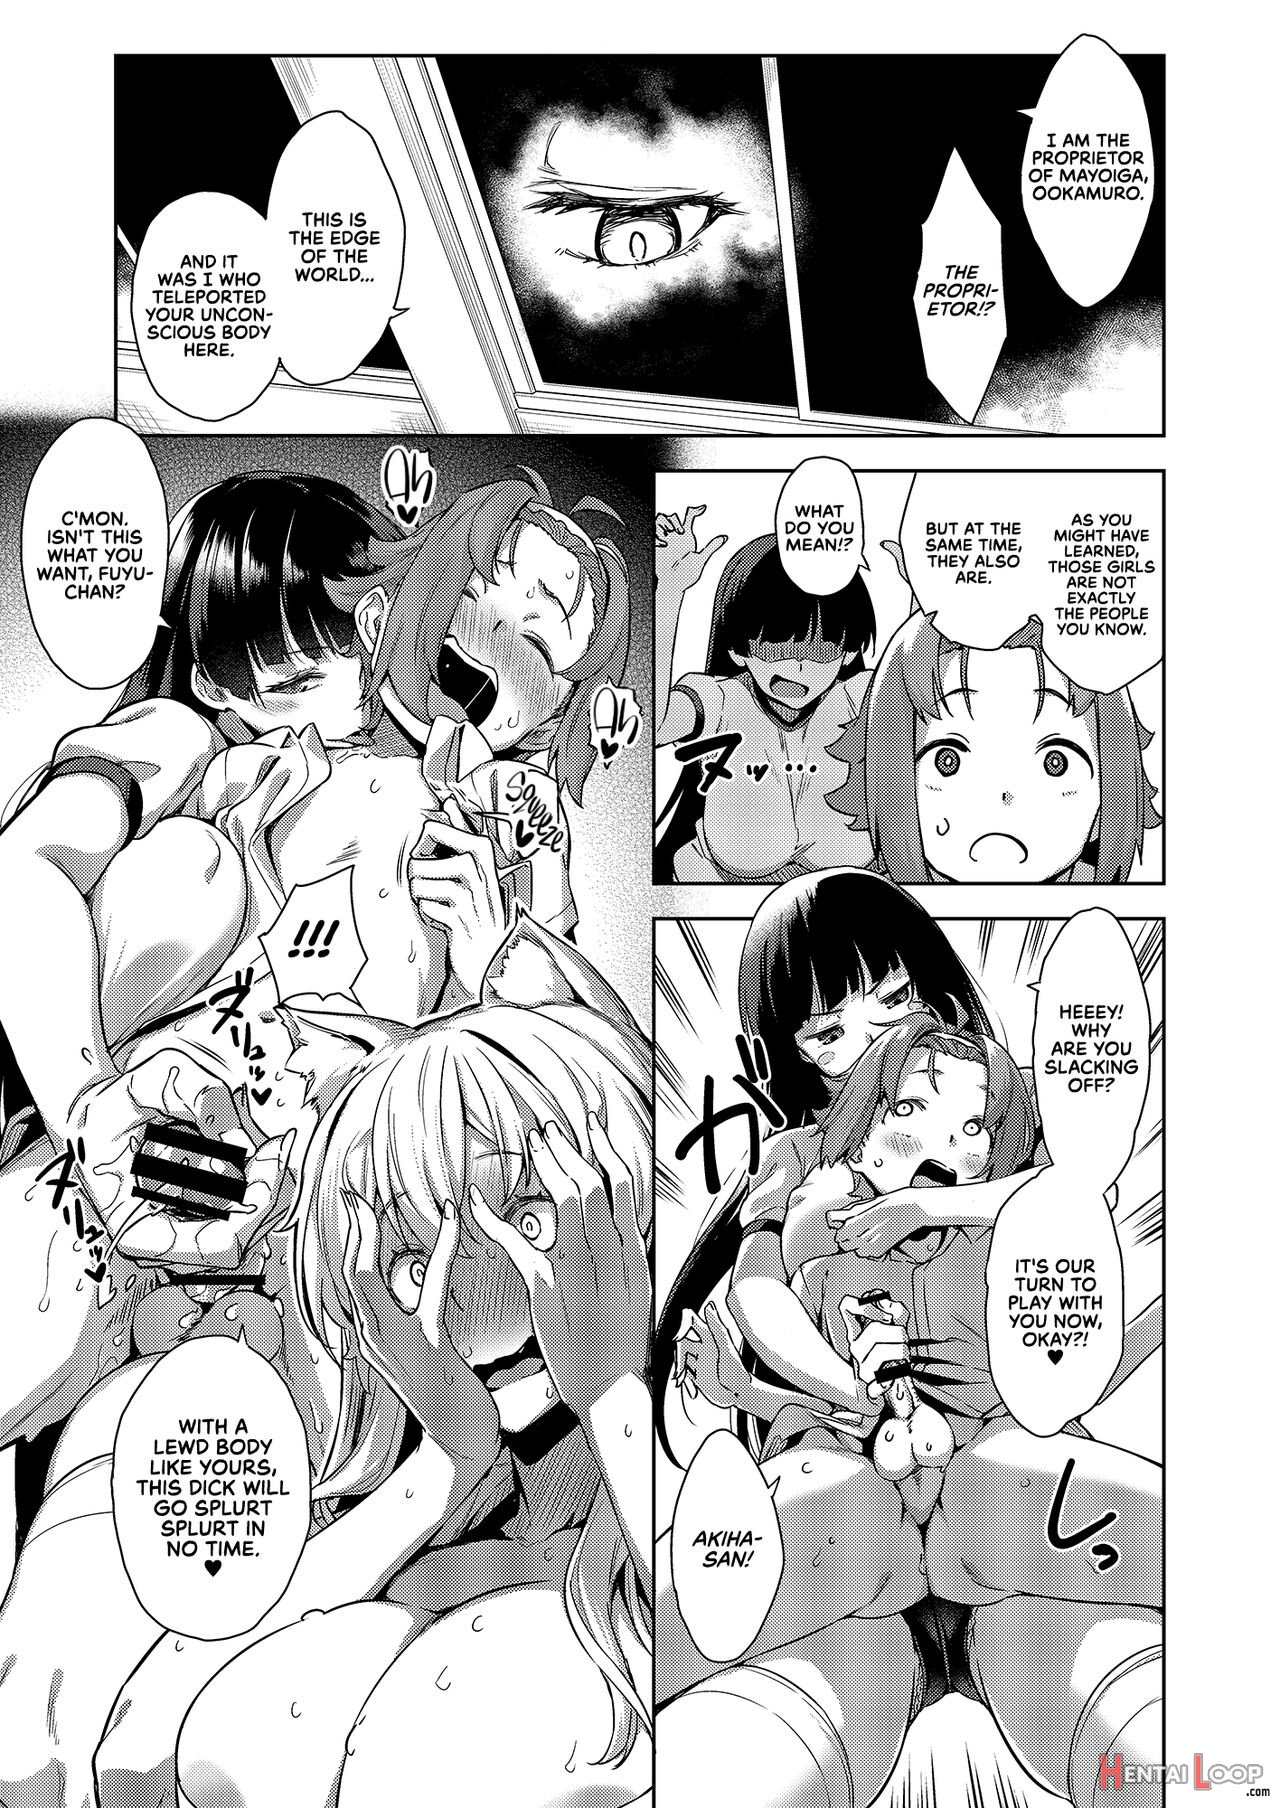 The Onee-san At Mayoiga Part 8 page 14